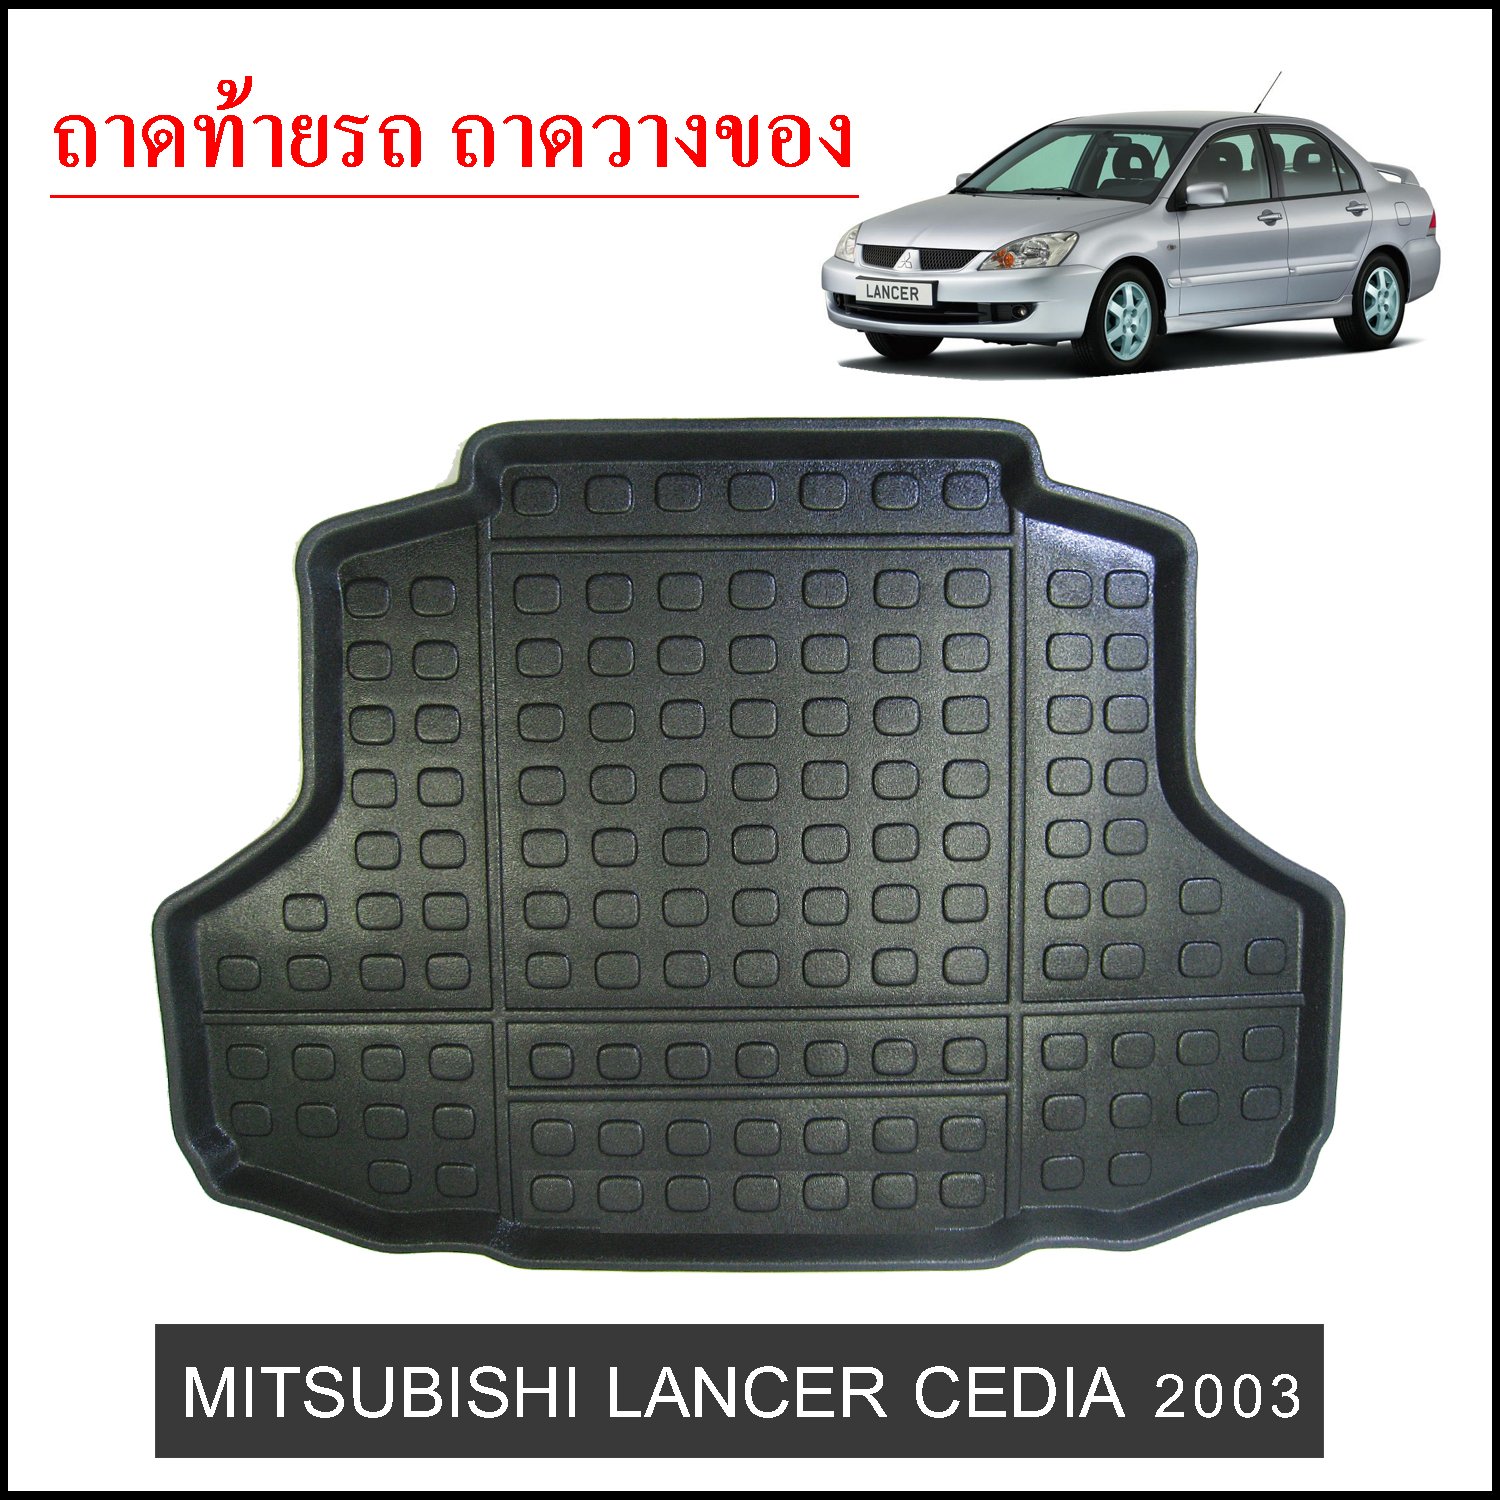 ถาดท้ายวางของ Mitsubishi Lancer Cedia 2003